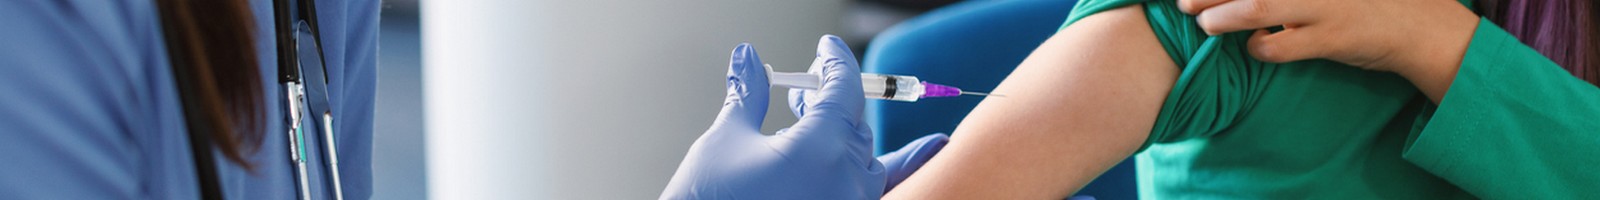 Préparation à la vaccination contre le papillomavirus au collège : comment ça se passe??